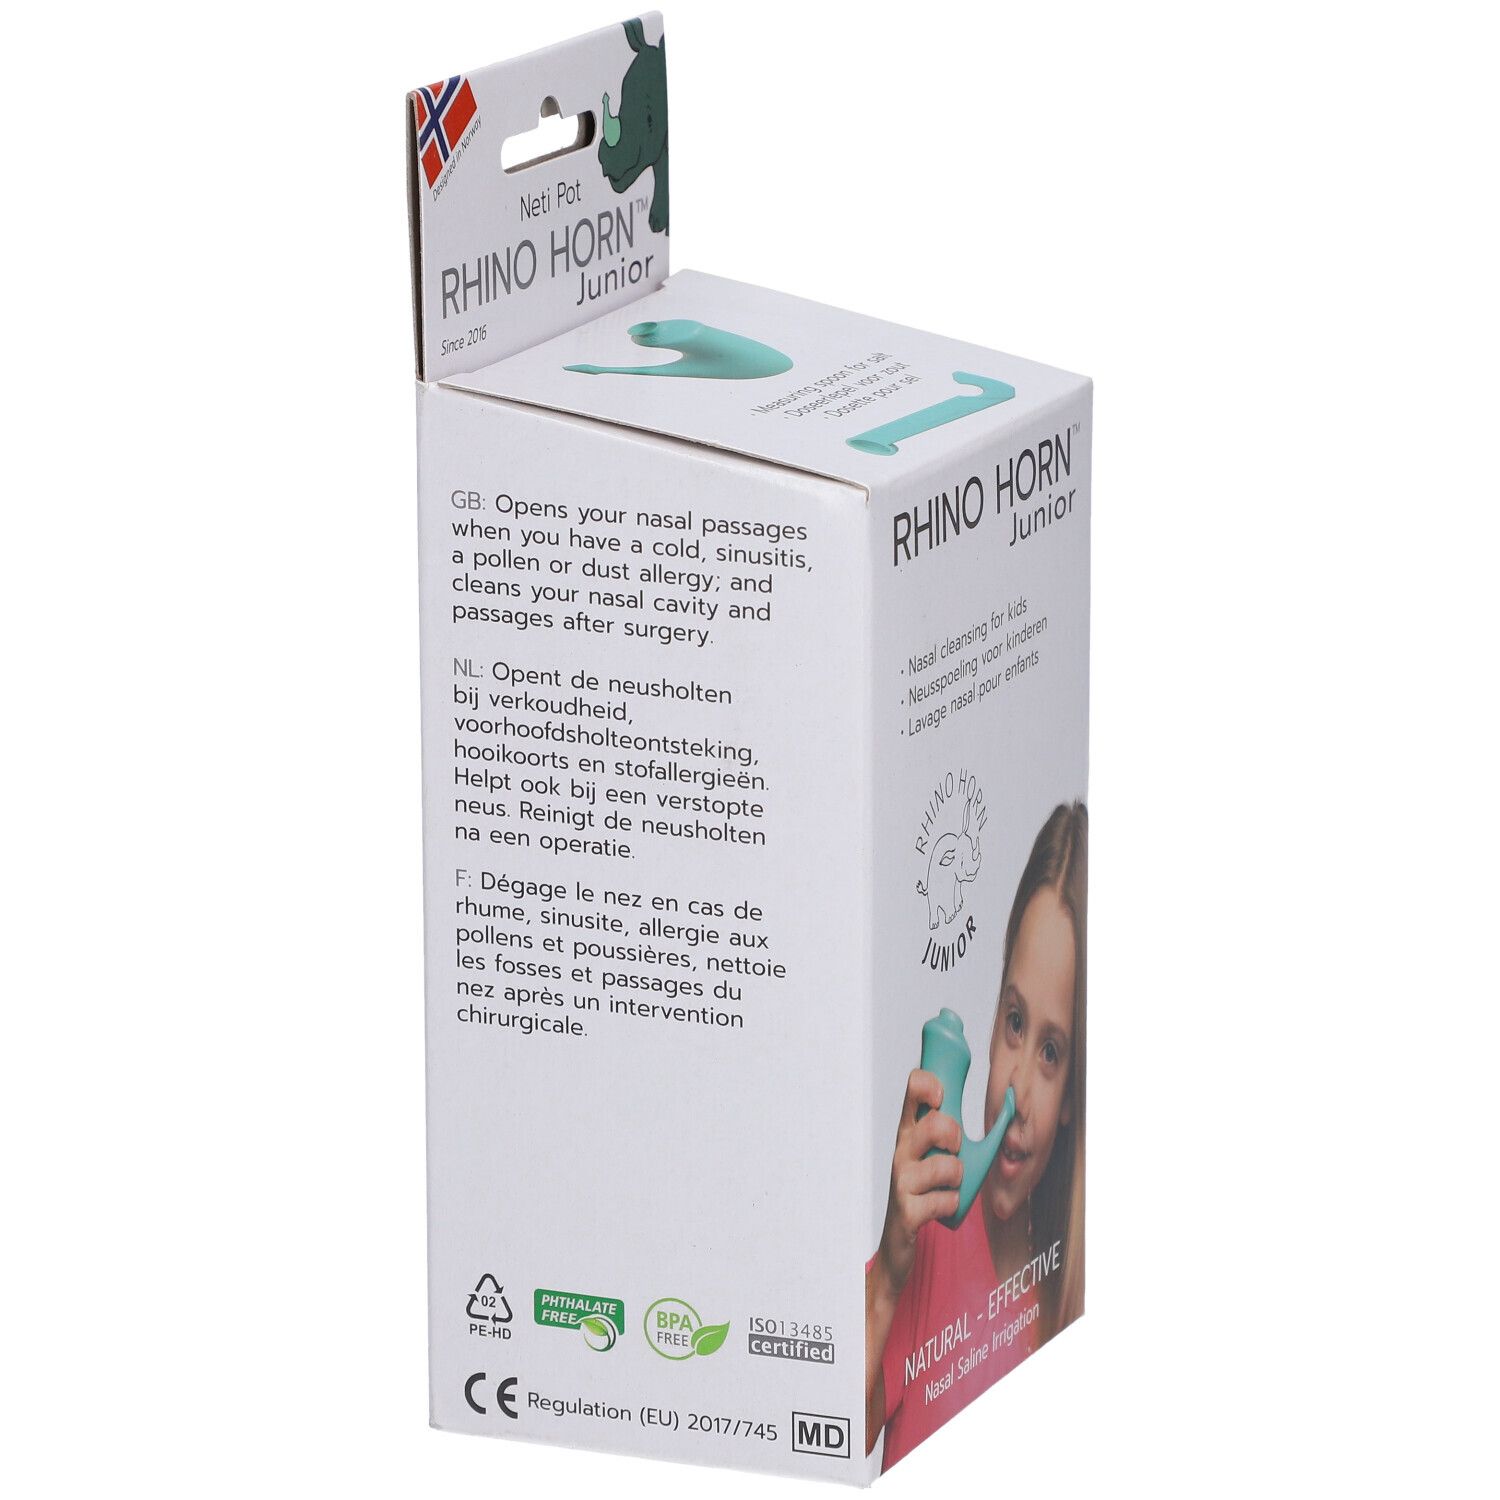 Lavage de nez RhinoHorn - Accessoire hygiène nasale : pot de neti